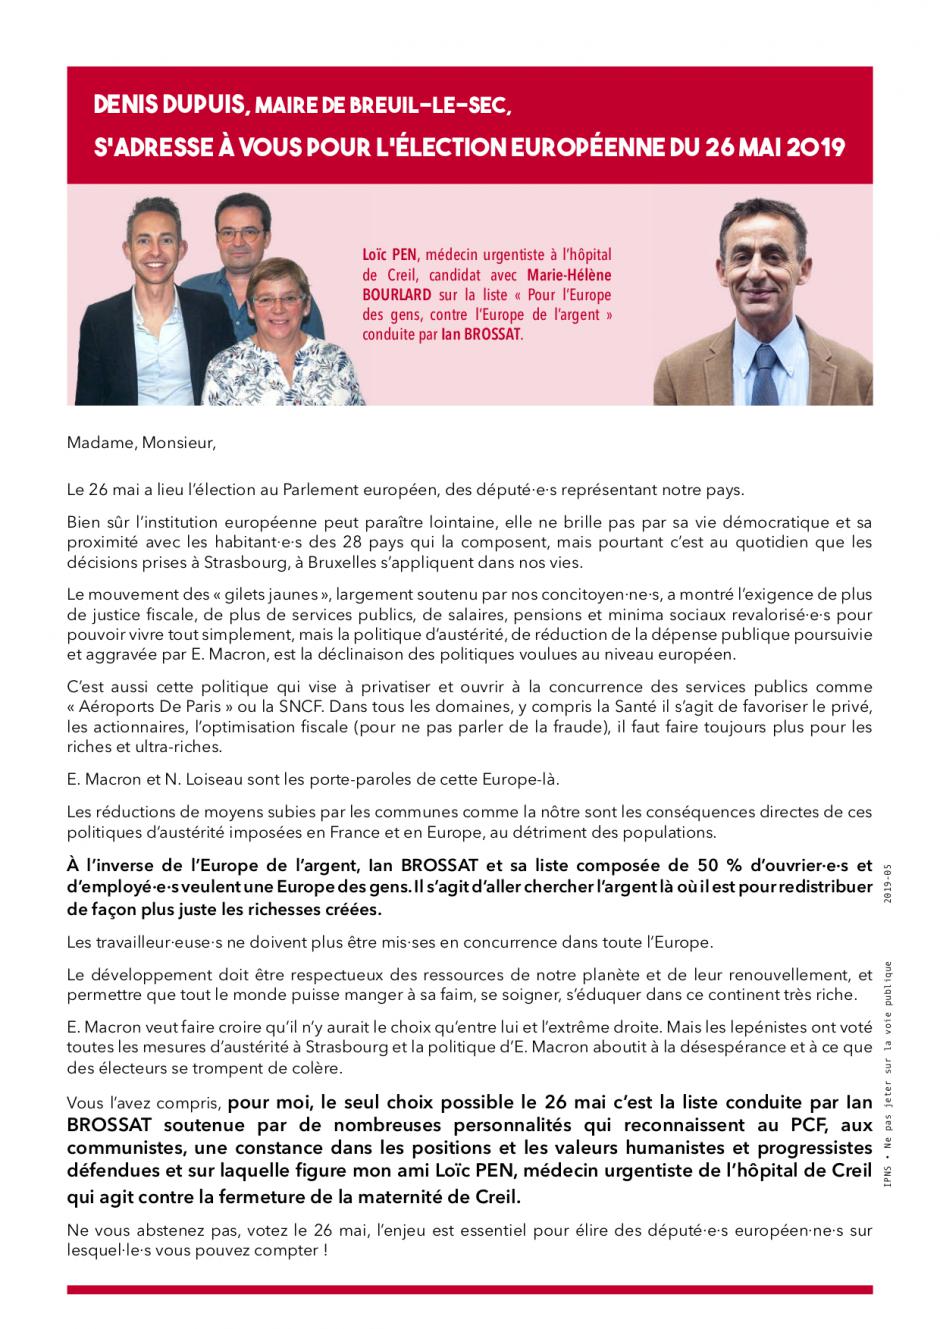 Appel à voter de Denis Dupuis, maire de Breuil-le-Sec, pour la liste conduite par Ian Brossat - Élections européennes, 26 mai 2019